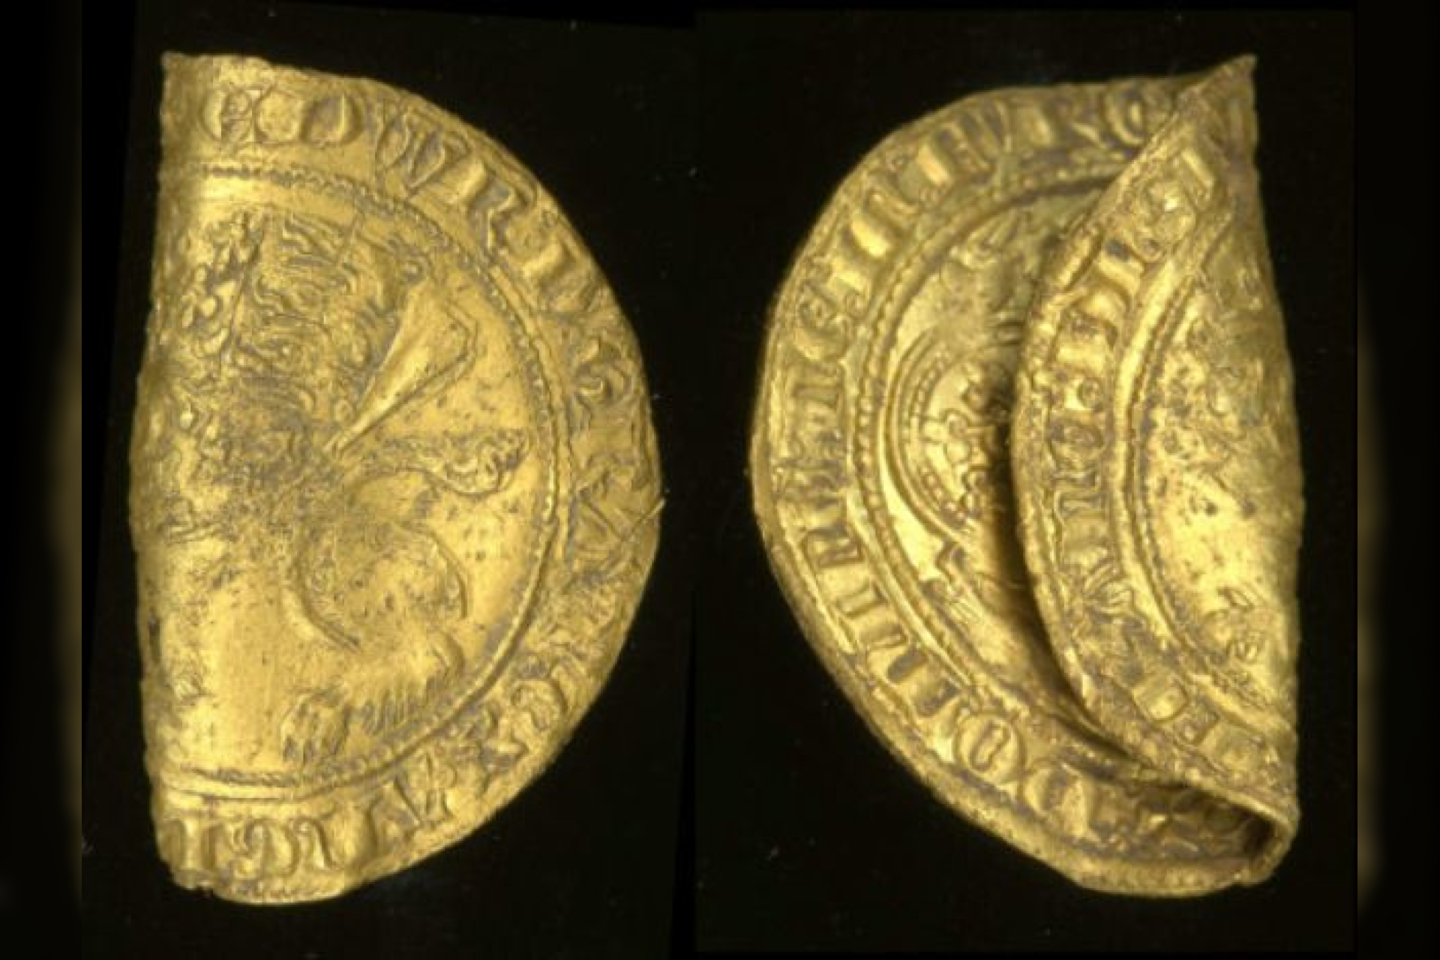 Metalo detektoriaus savininkas Anglijoje atrado dvi retas auksines monetas, kurios datuojamos XIV amžiaus viduriu.<br>Britų muziejaus nuotr.